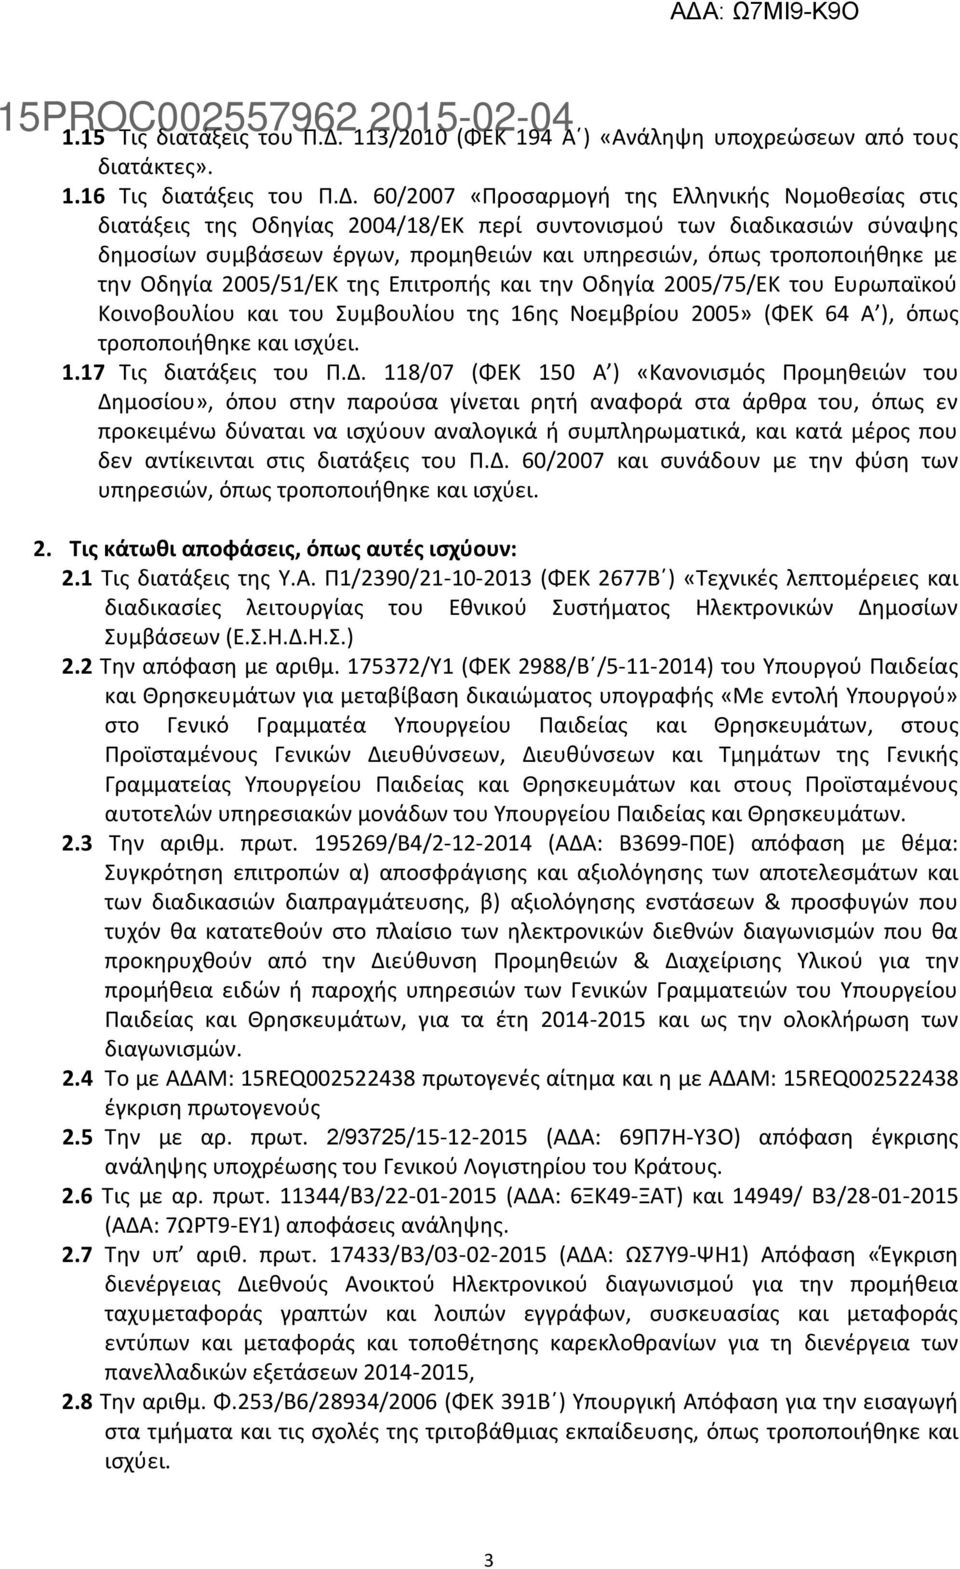 60/2007 «Προσαρμογή της Ελληνικής Νομοθεσίας στις διατάξεις της Οδηγίας 2004/18/ΕΚ περί συντονισμού των διαδικασιών σύναψης δημοσίων συμβάσεων έργων, προμηθειών και υπηρεσιών, όπως τροποποιήθηκε με